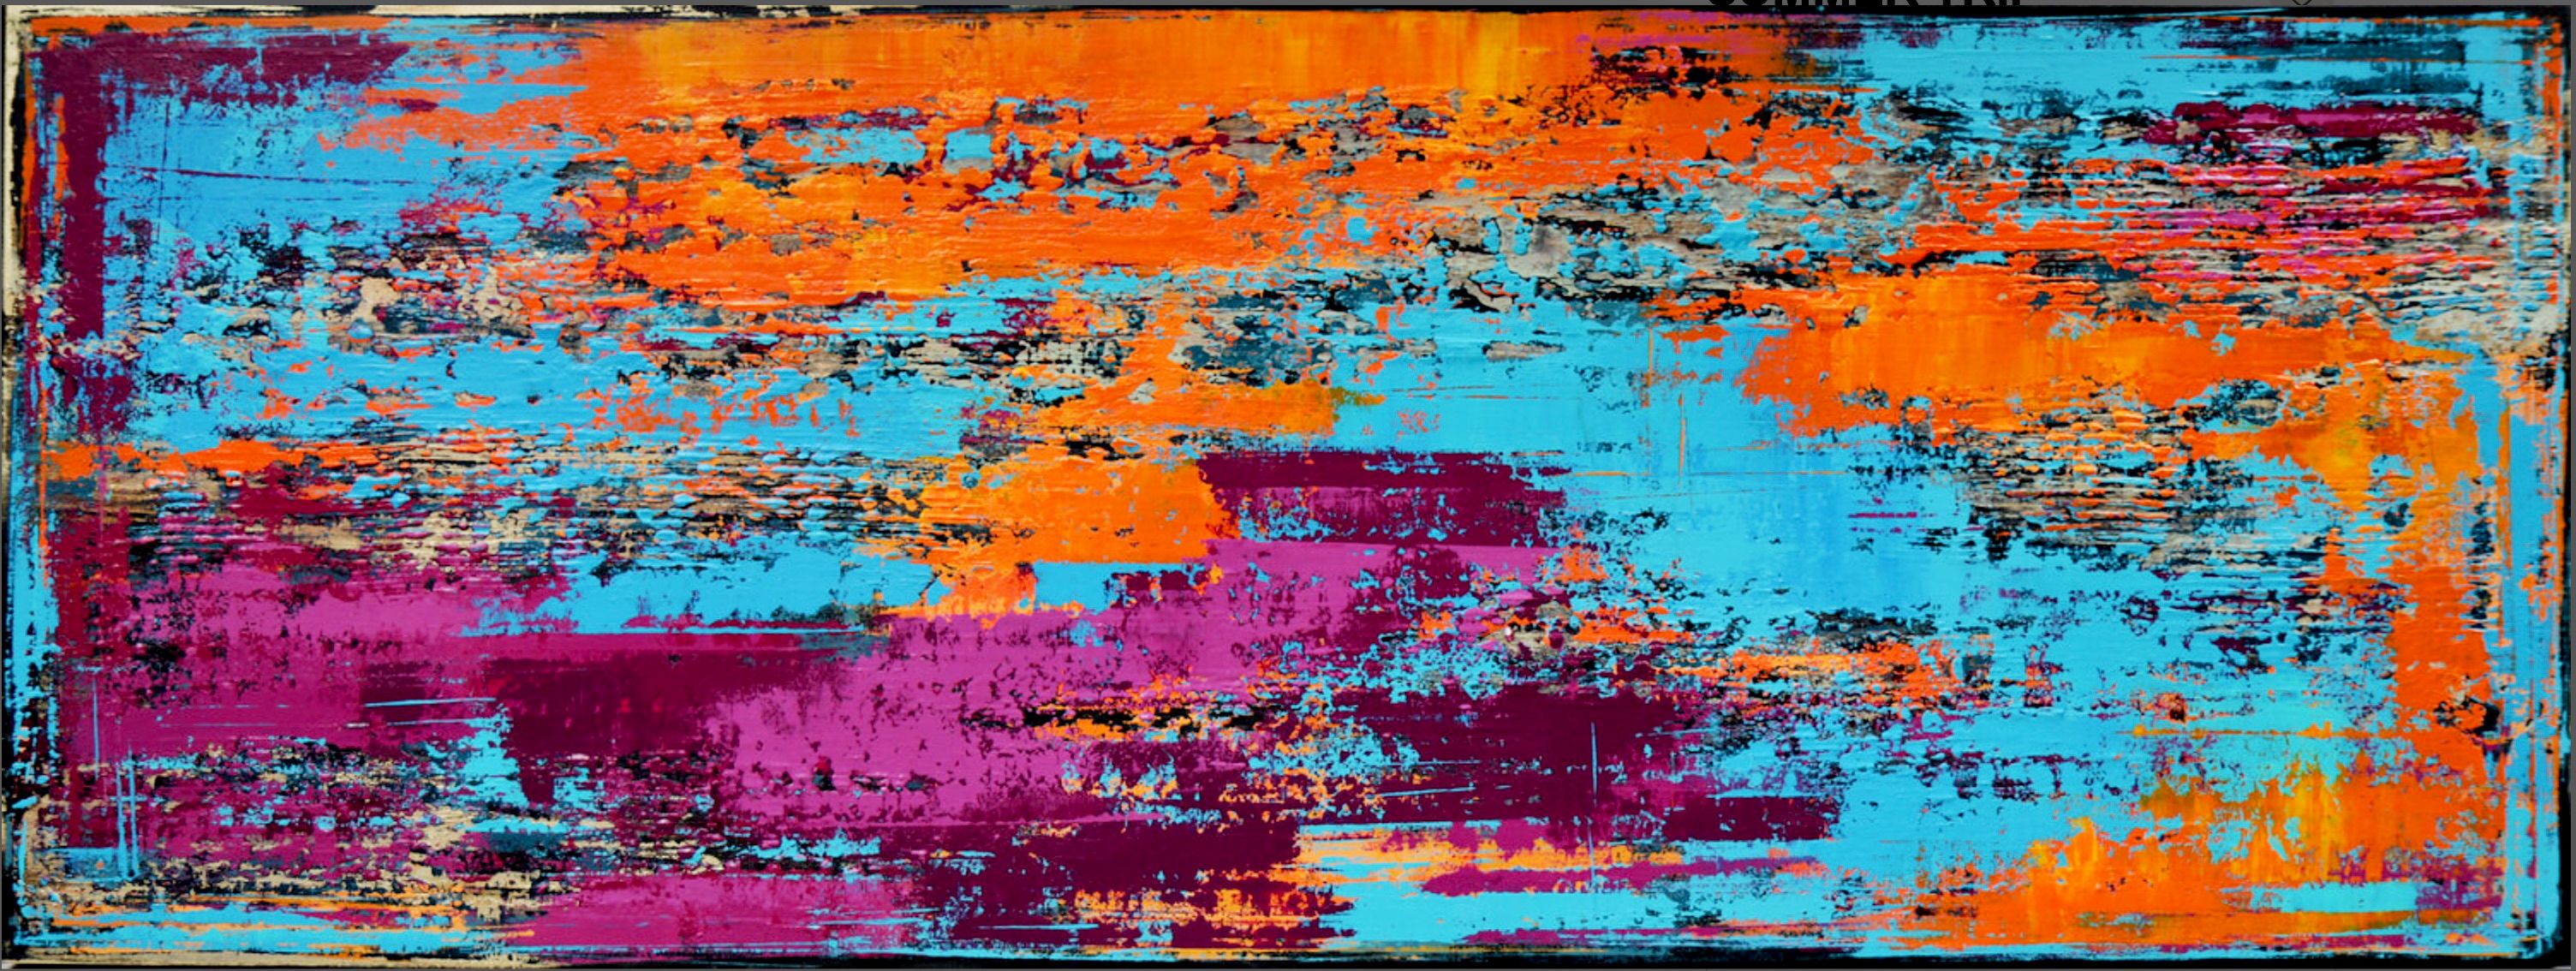 In Inez Froehlich's "SUMMER TRIP" abstraktes farbenfrohes Gemälde mit Strukturen. Warme, lebendige Farben in Orange , Blau, Türkis und Violett. Der Stil des Gemäldes ist Shabby chic, Industriestil, Vintage, Retro.